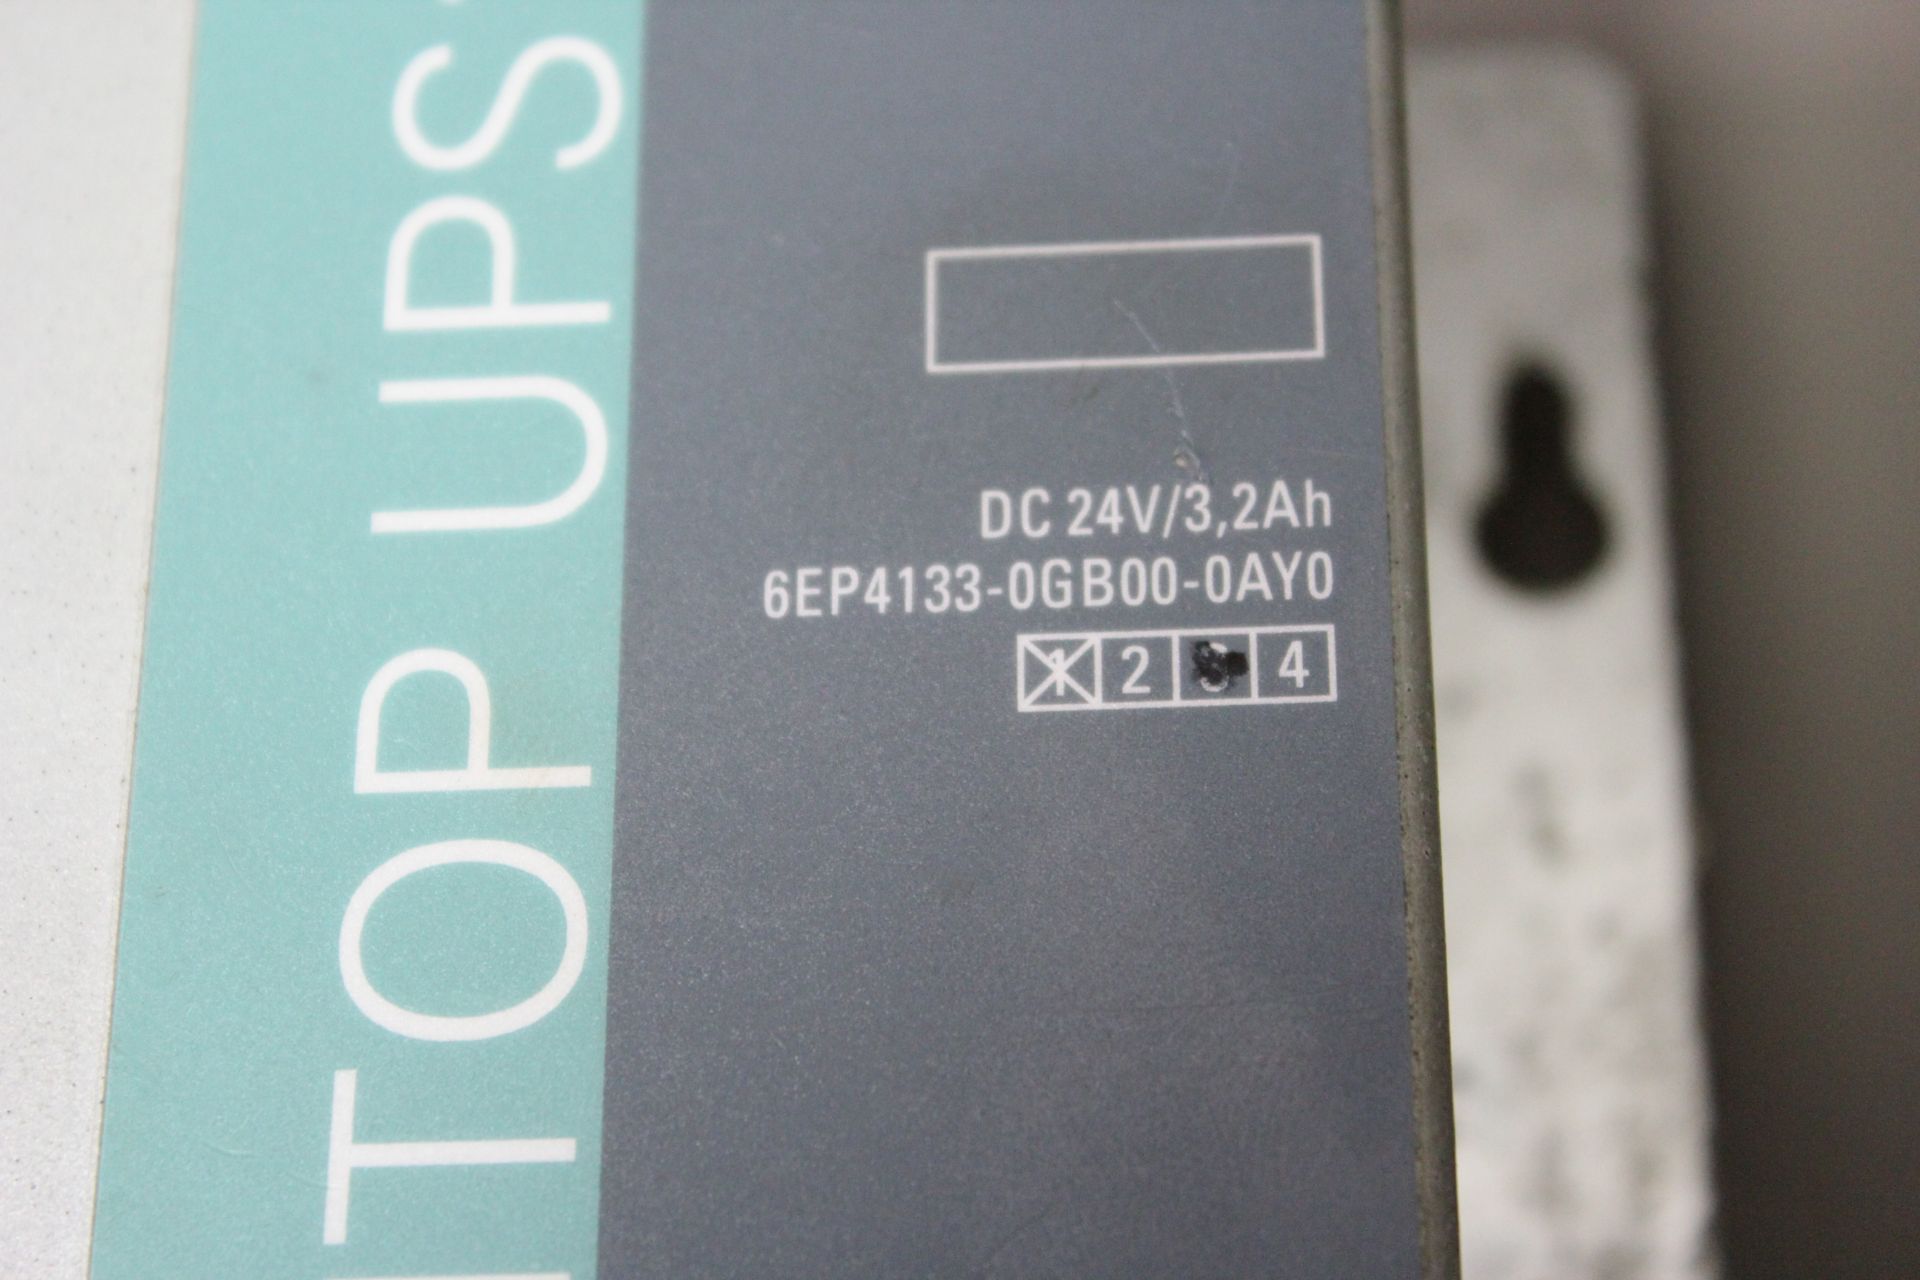 SIEMENS SITOP UPS 1100 - Image 2 of 3